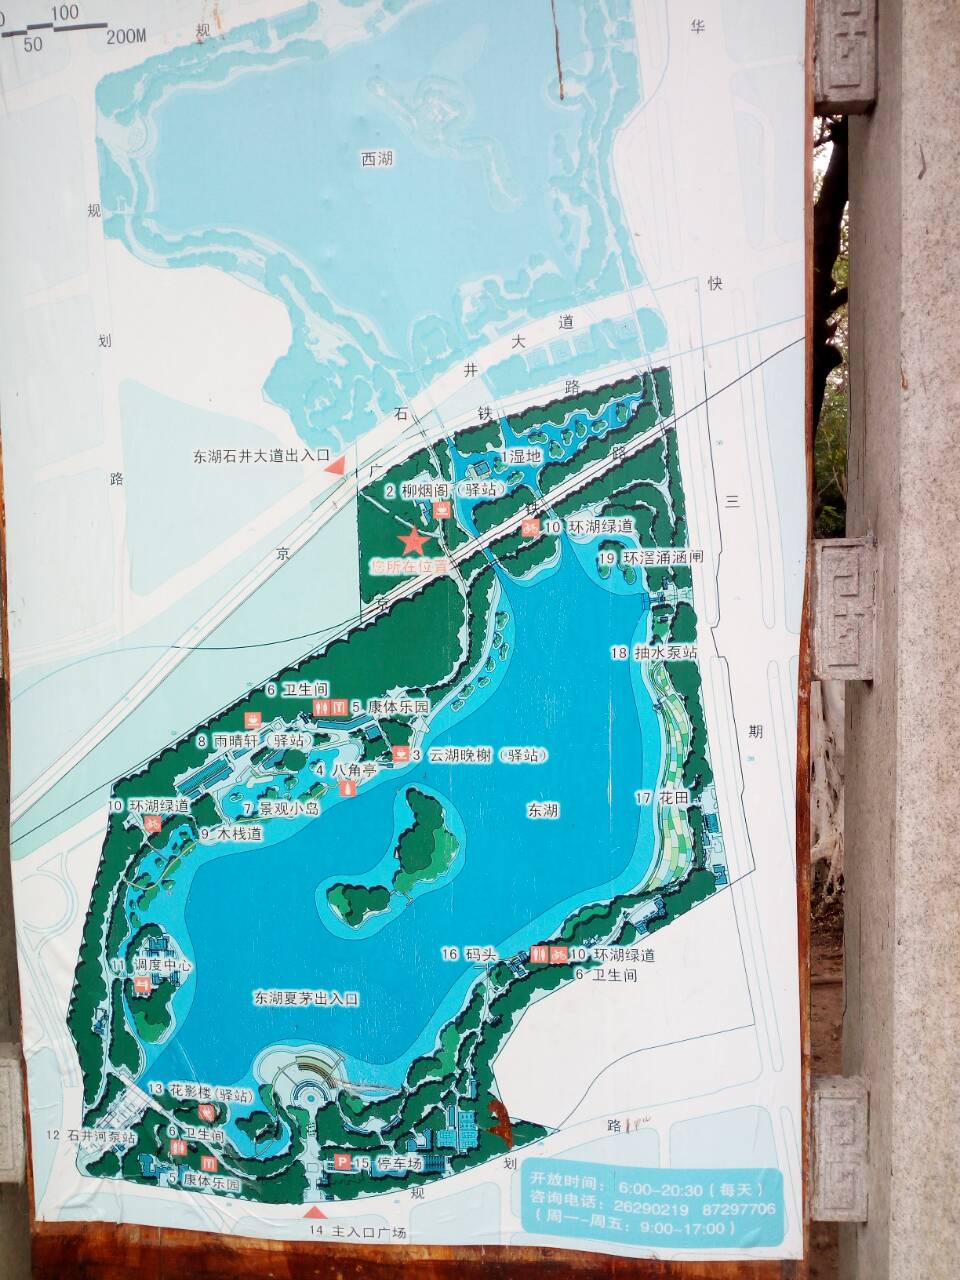 白云湖是广州白云区市区内一个免费的大型公园,春初时分去,坐车去要